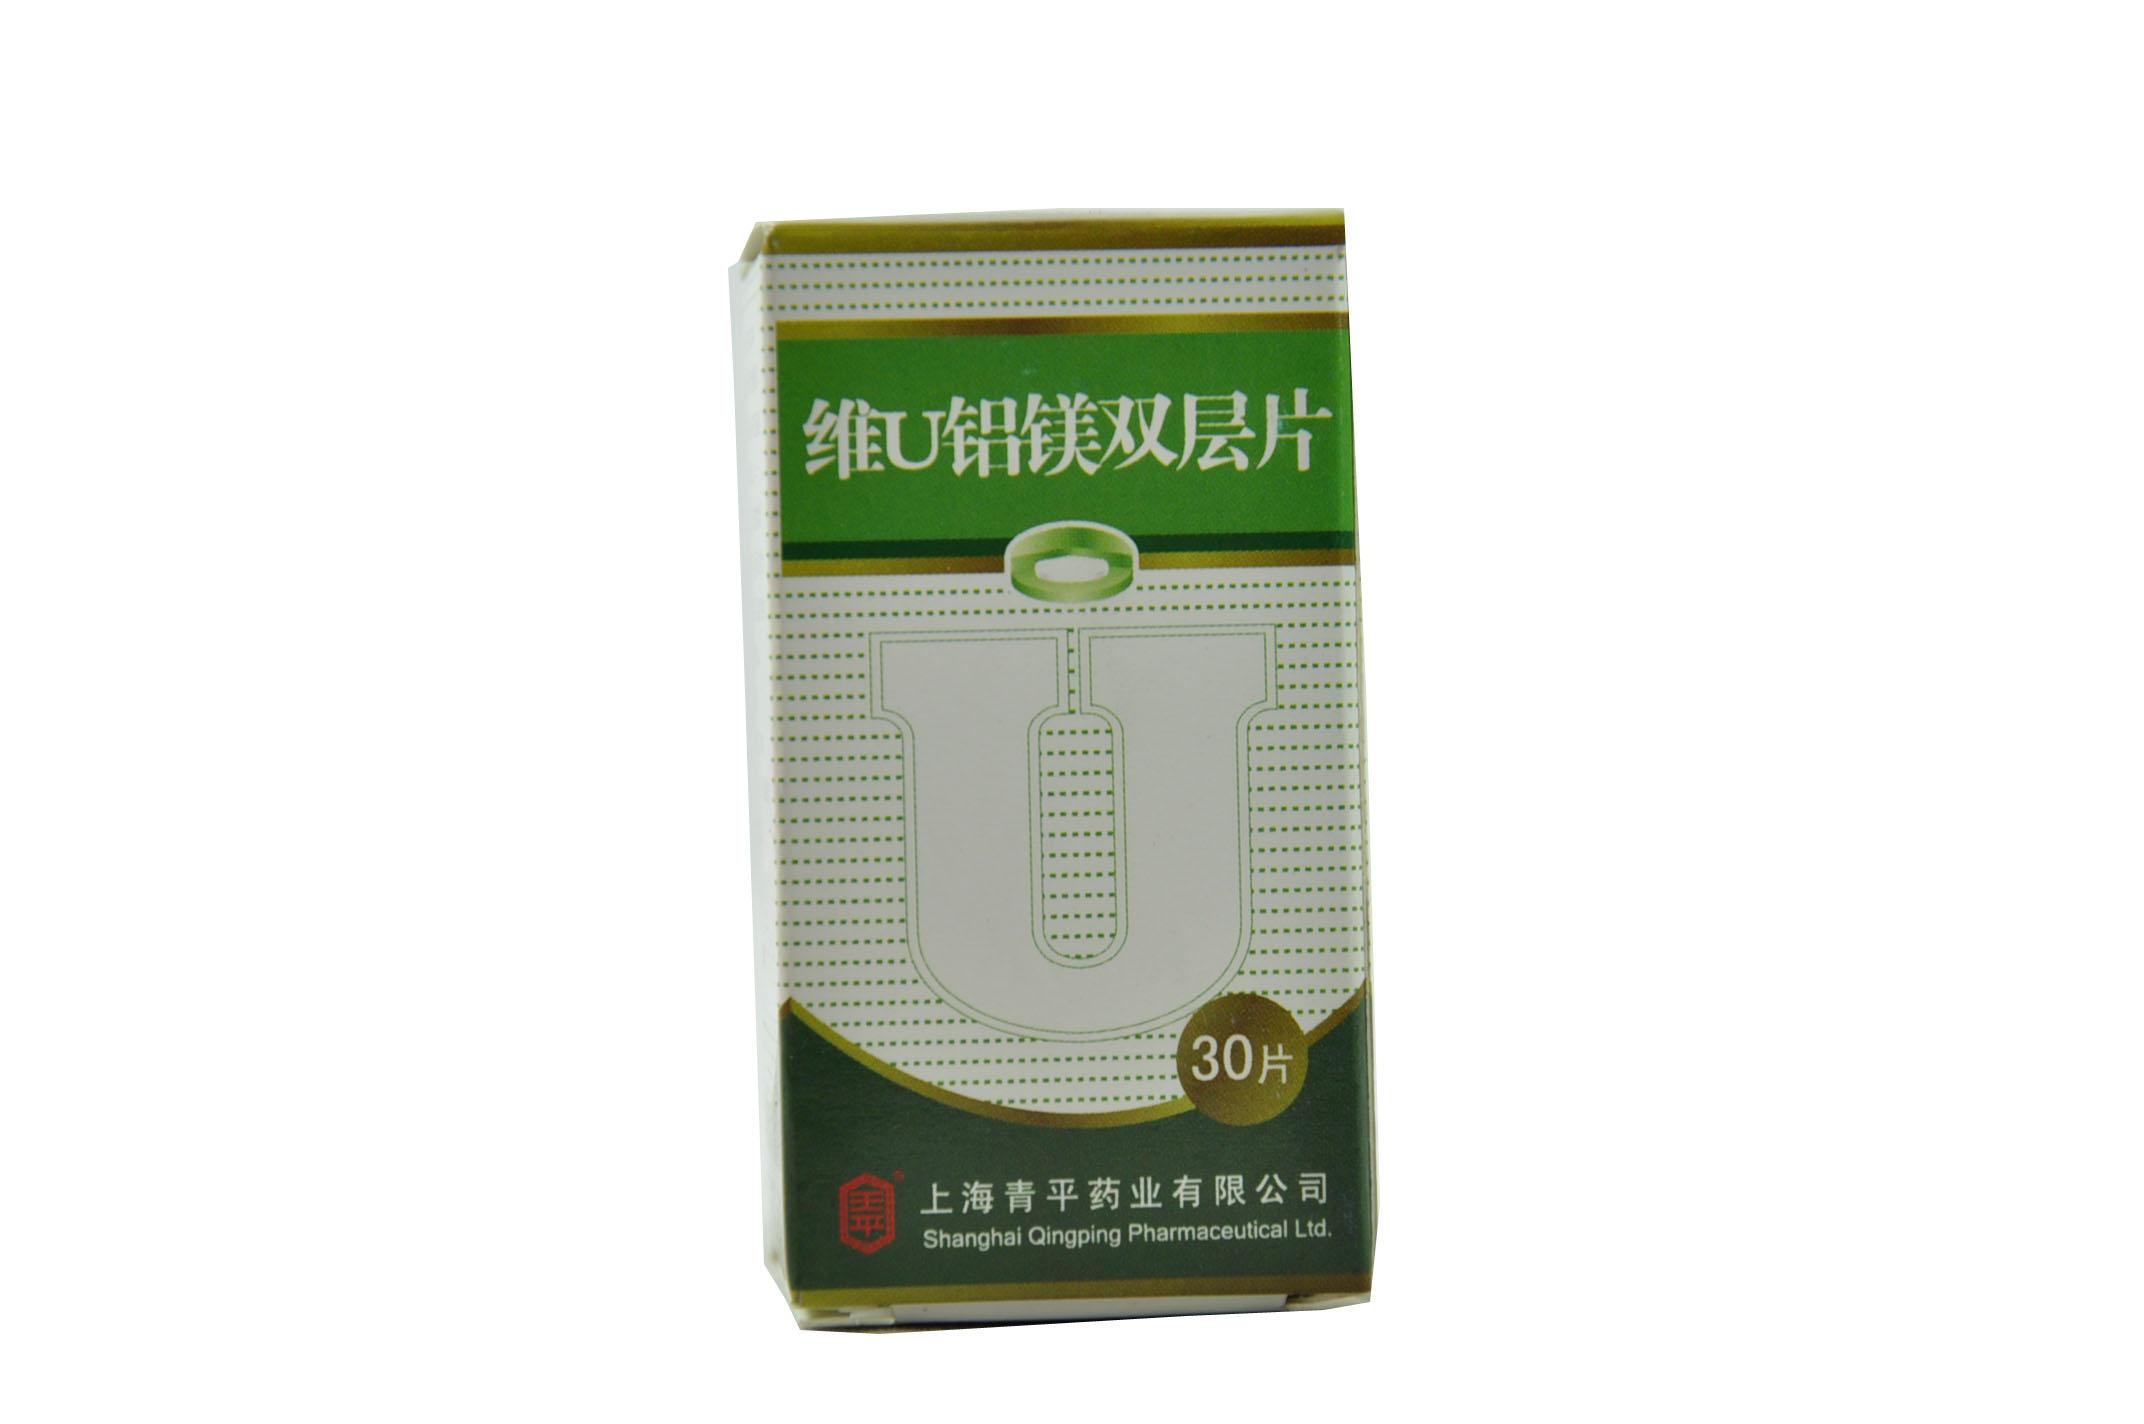 【天平】维U铝镁双层片-上海青平制药有限公司